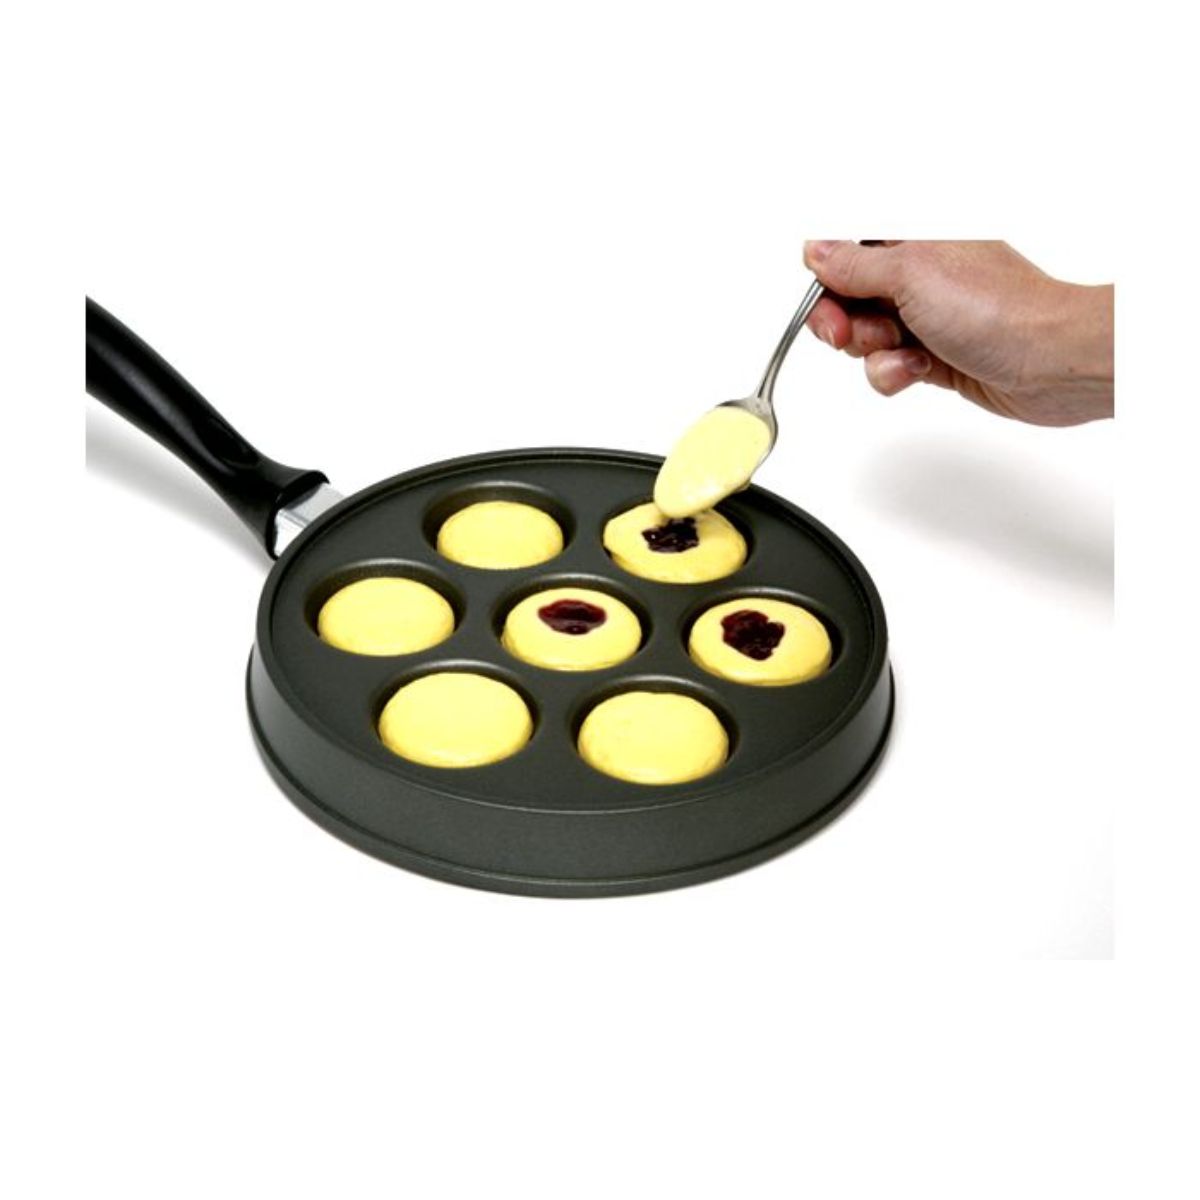 Norpro Nonstick Stuffed Pankcake Pan, Munk/Aebelskiver